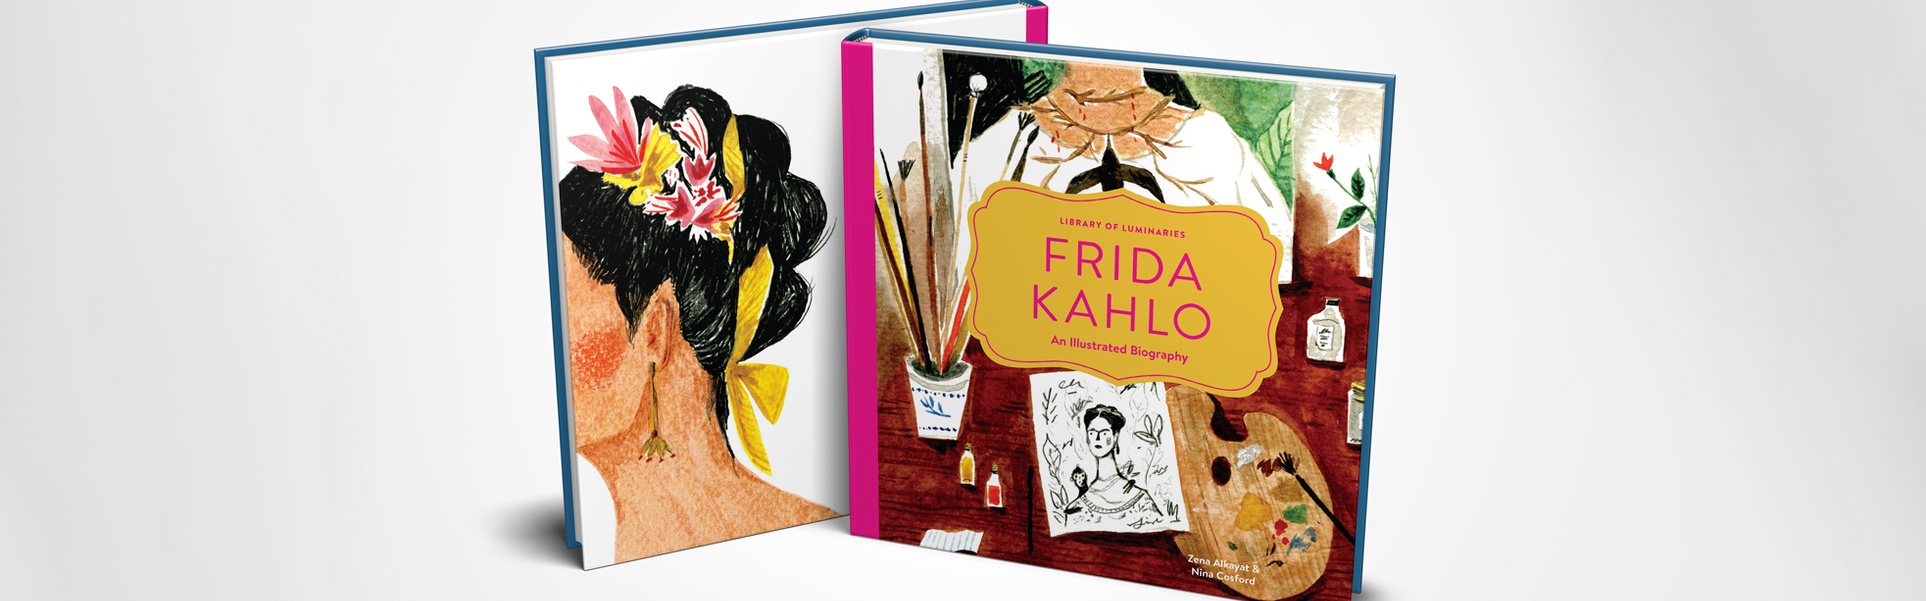 Frida Kahlo, um livro de biografia ilustrada